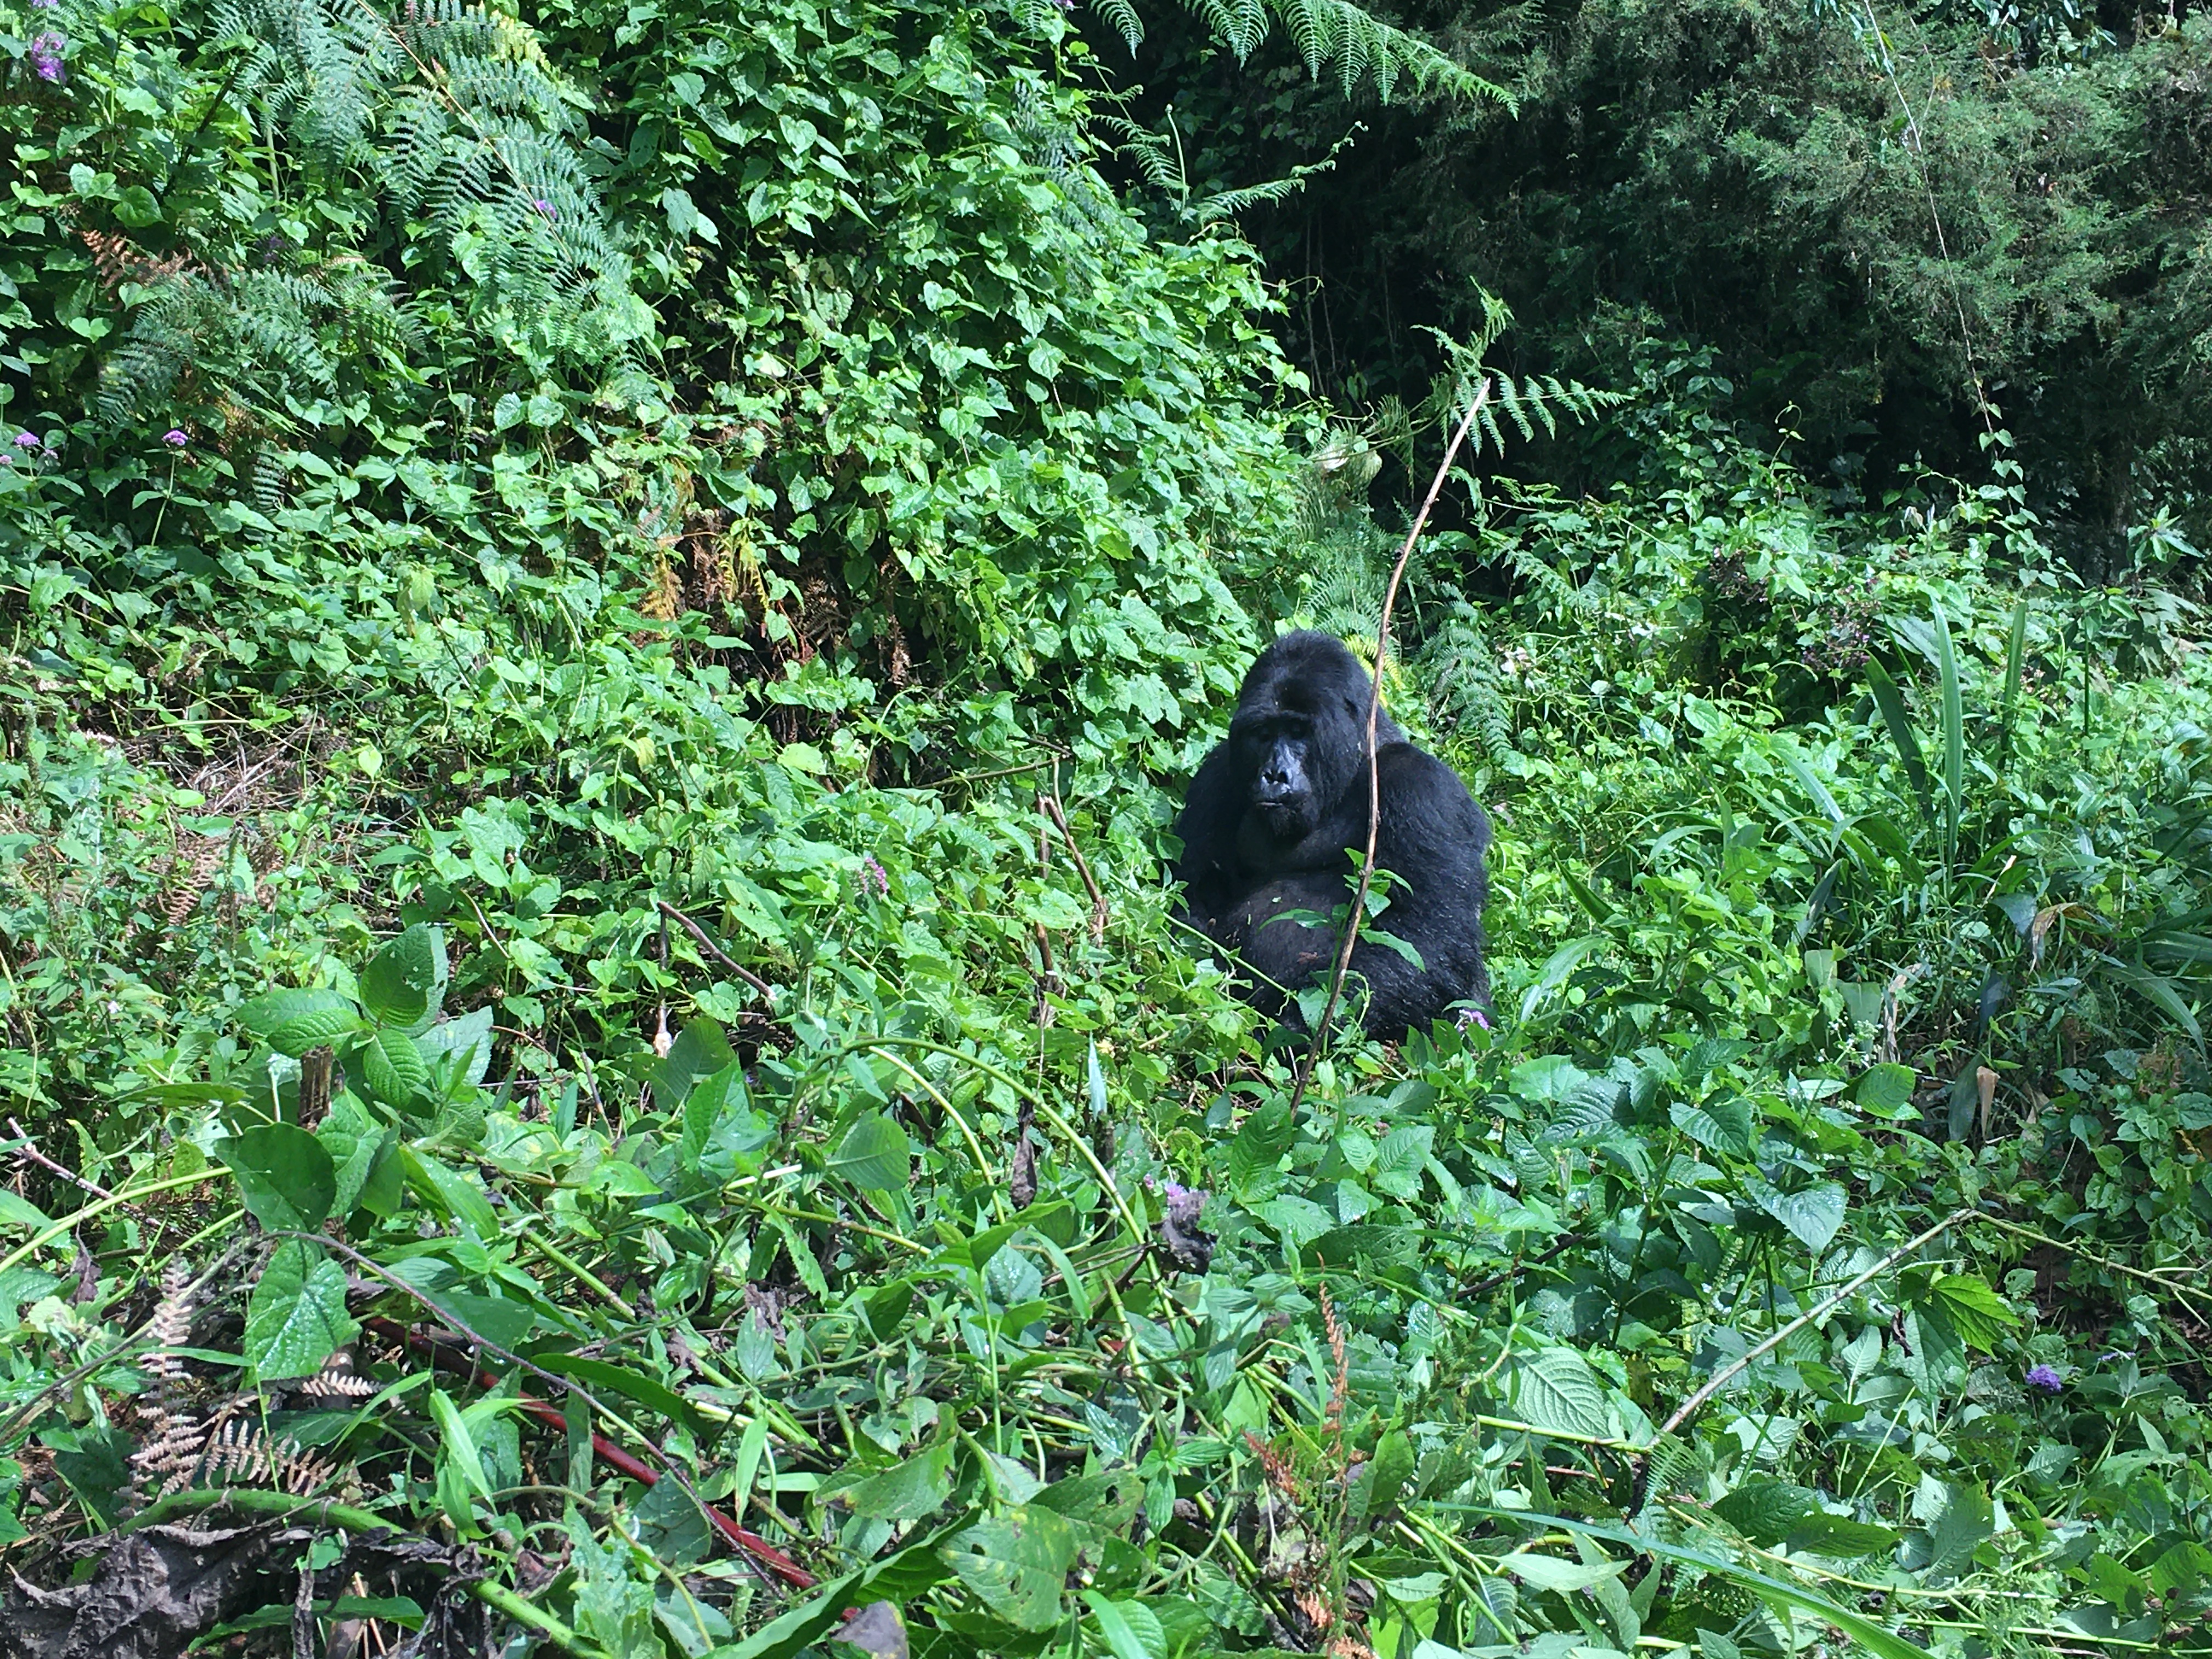 About Gorillas Trekking Adventure